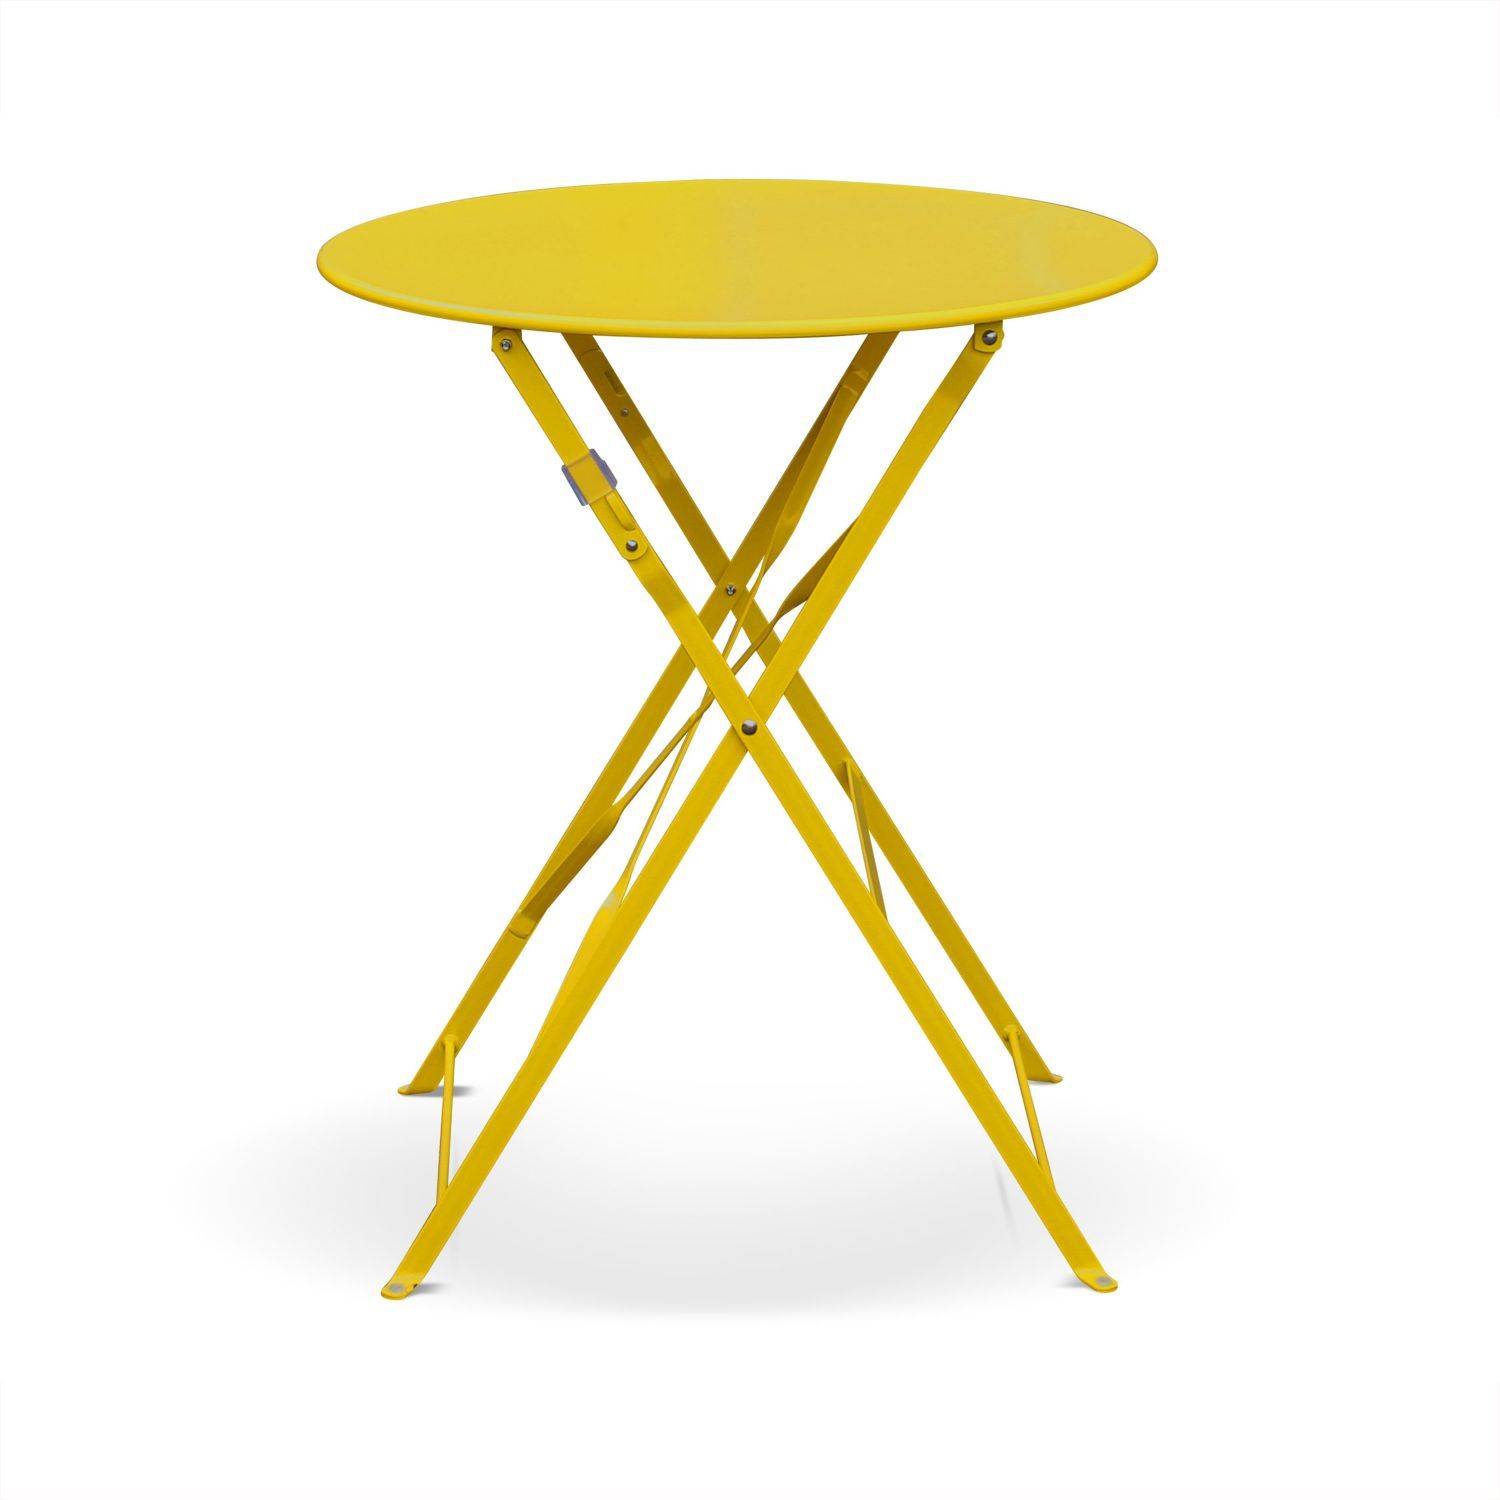 Klappbare Bistro-Gartengarnitur - Emilia rund gelb - Ø60cm Tisch mit zwei Klappstühlen aus pulverbeschichtetem Stahl Photo3